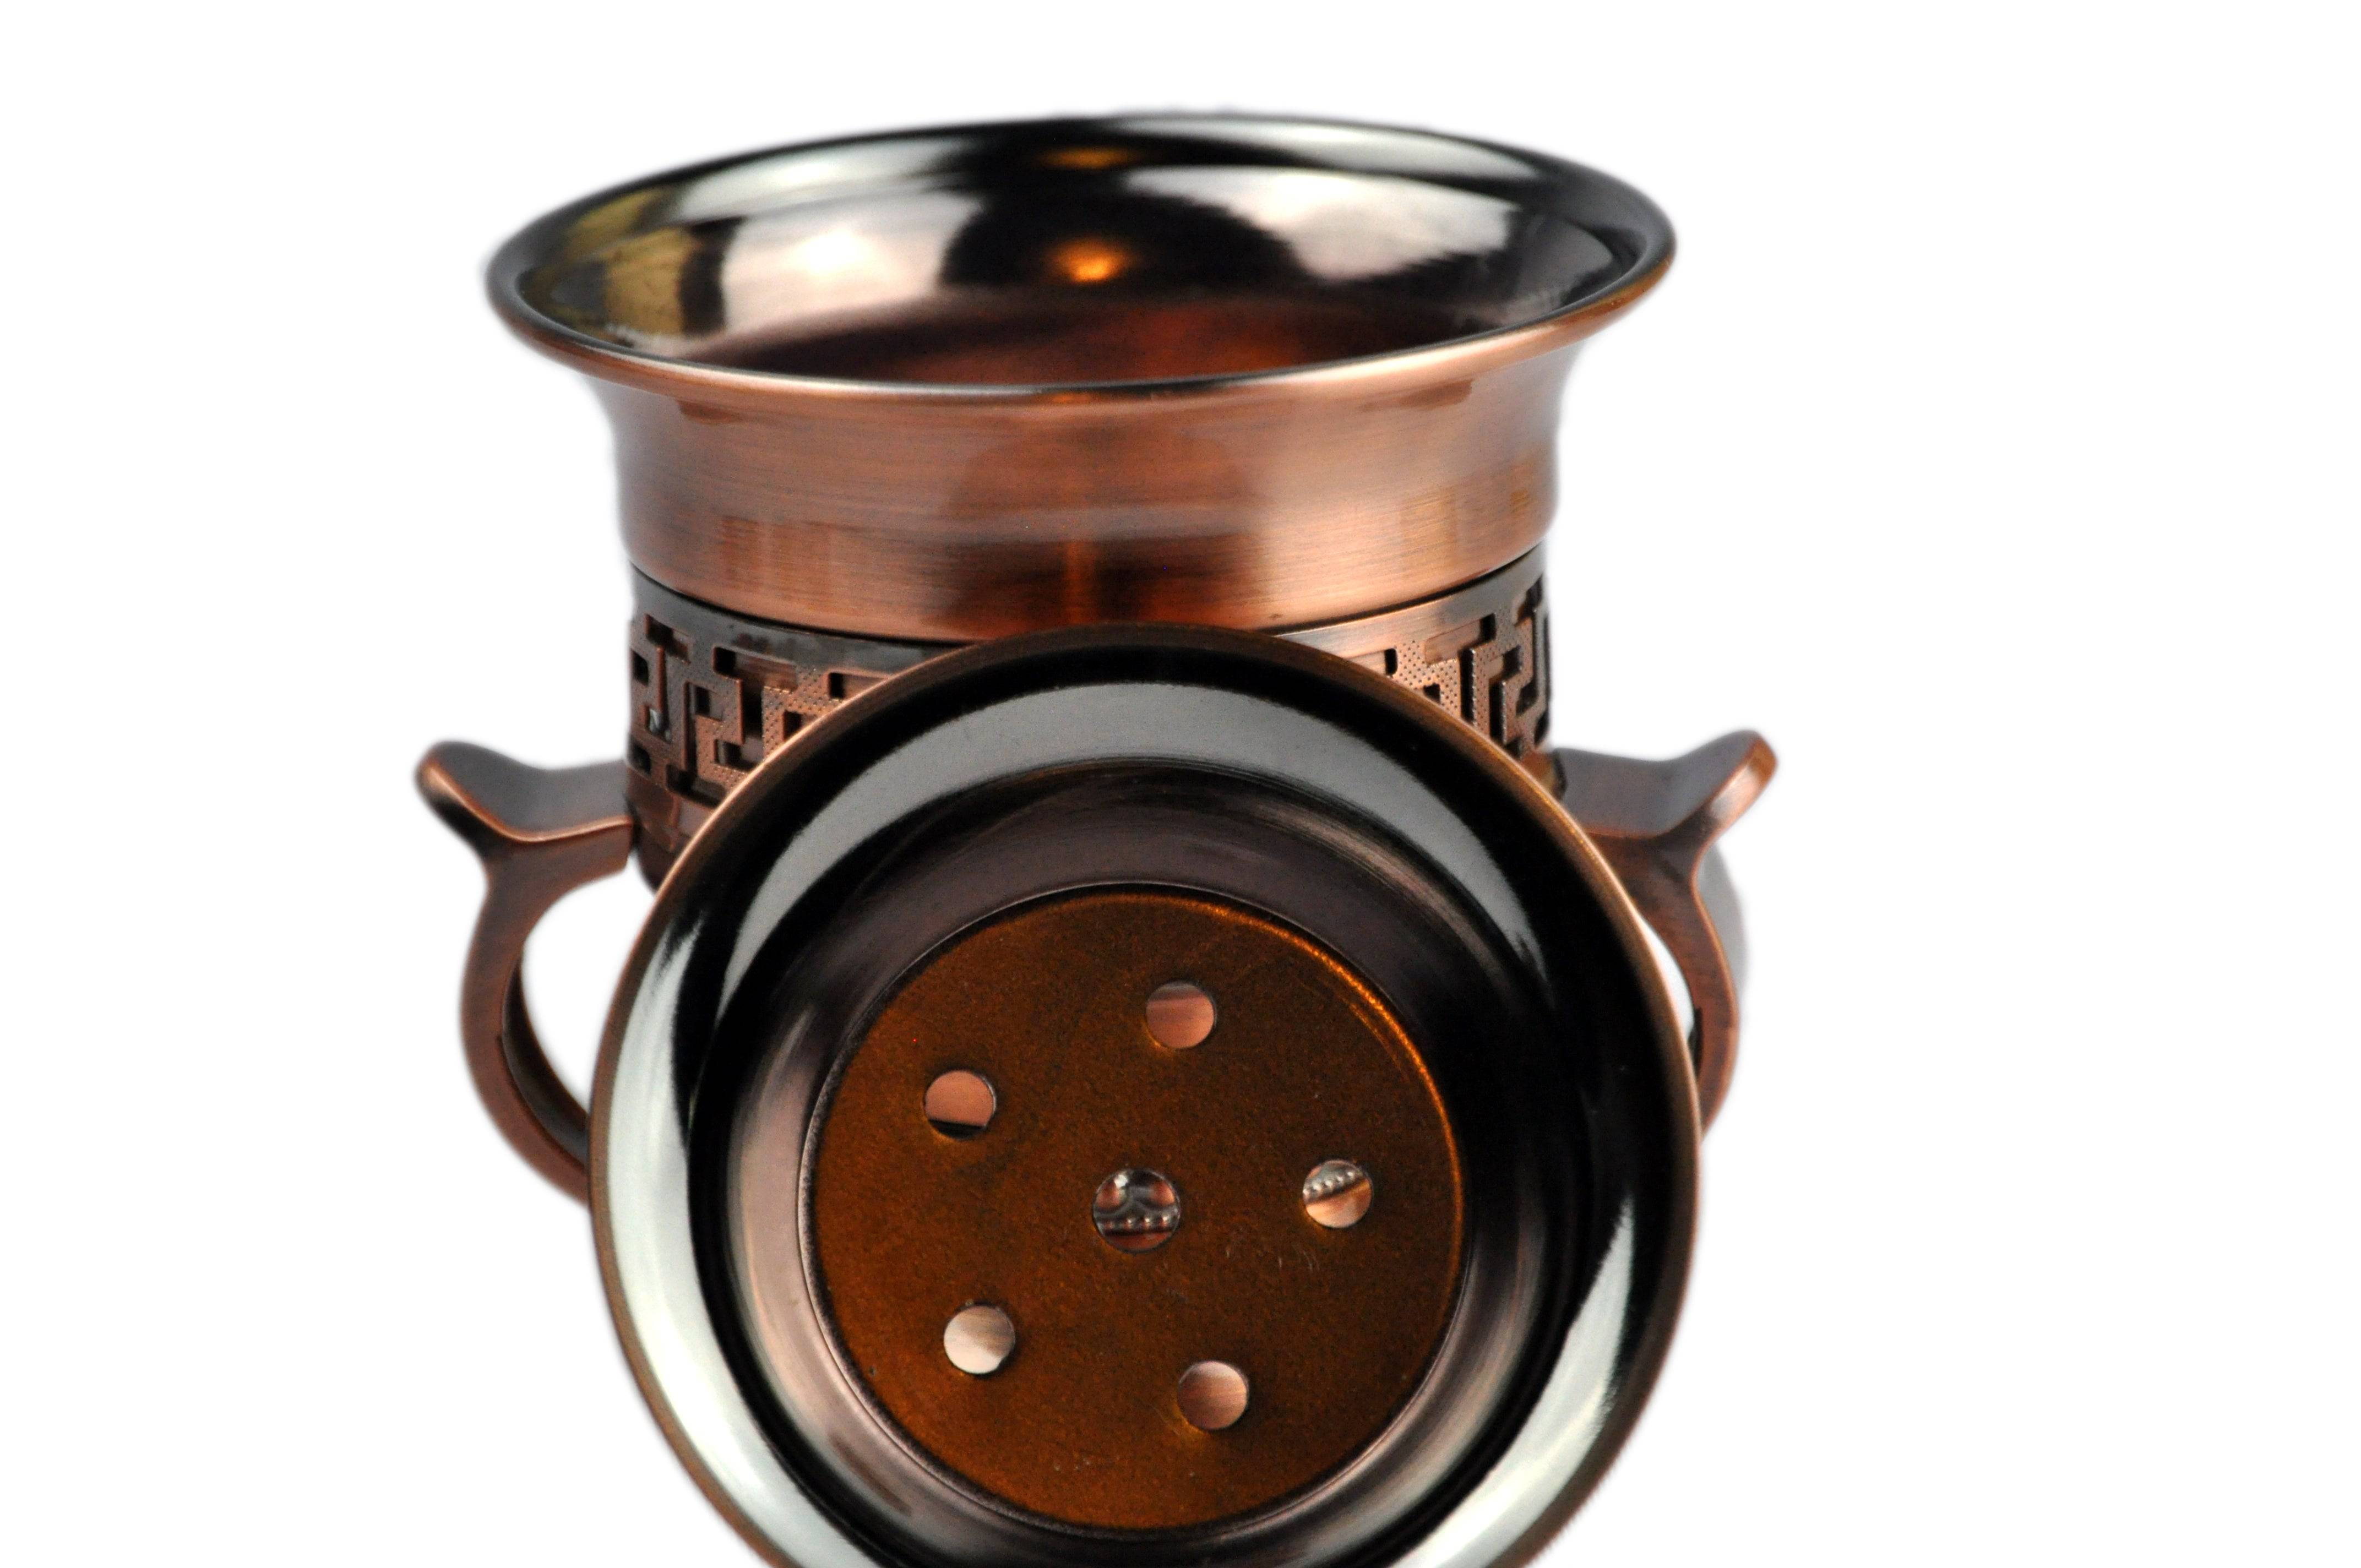 Arab Incense Bakhoor Burner Rustic - 5 inch by Intense Oud - Intense oud